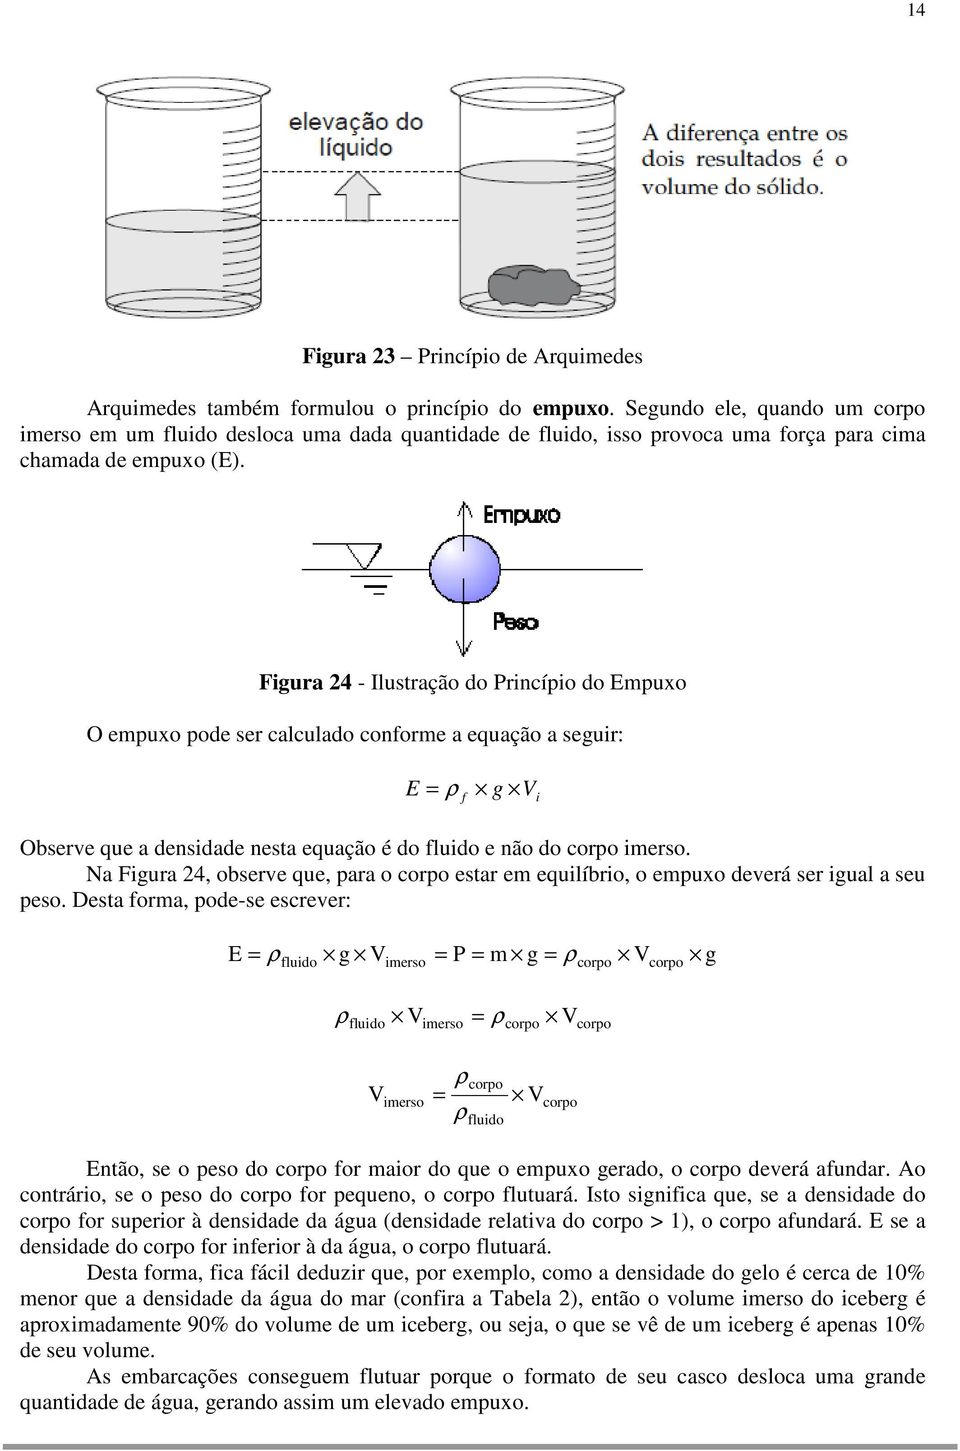 Figura 24 - Ilustração do Princípio do Empuxo O empuxo pode ser calculado conforme a equação a seguir: E = ρ g f V i Observe que a densidade nesta equação é do fluido e não do corpo imerso.